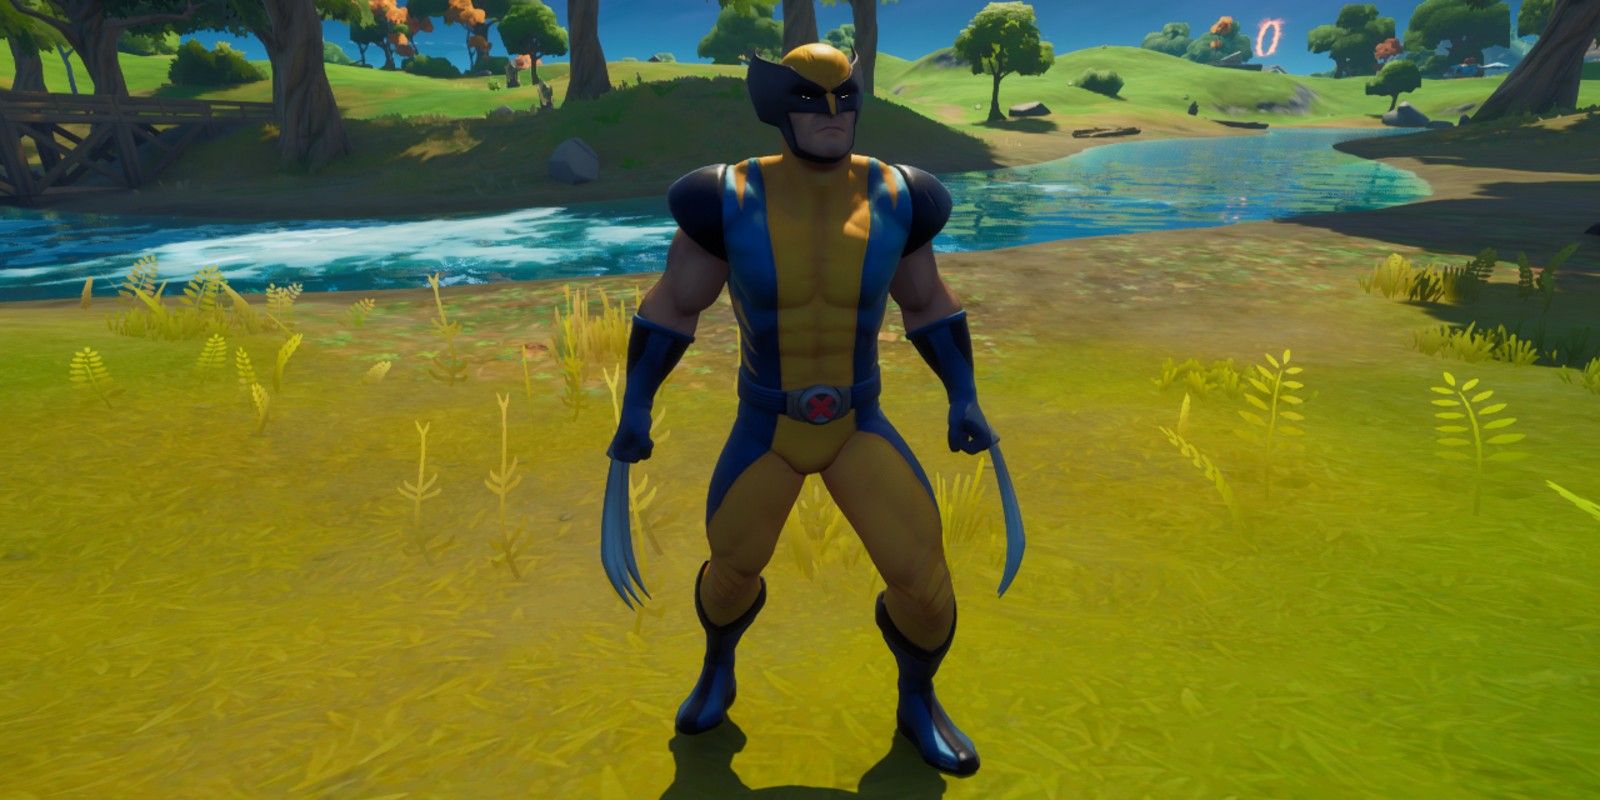 Wolverine is a new NPC boss in Fortnite Season 4